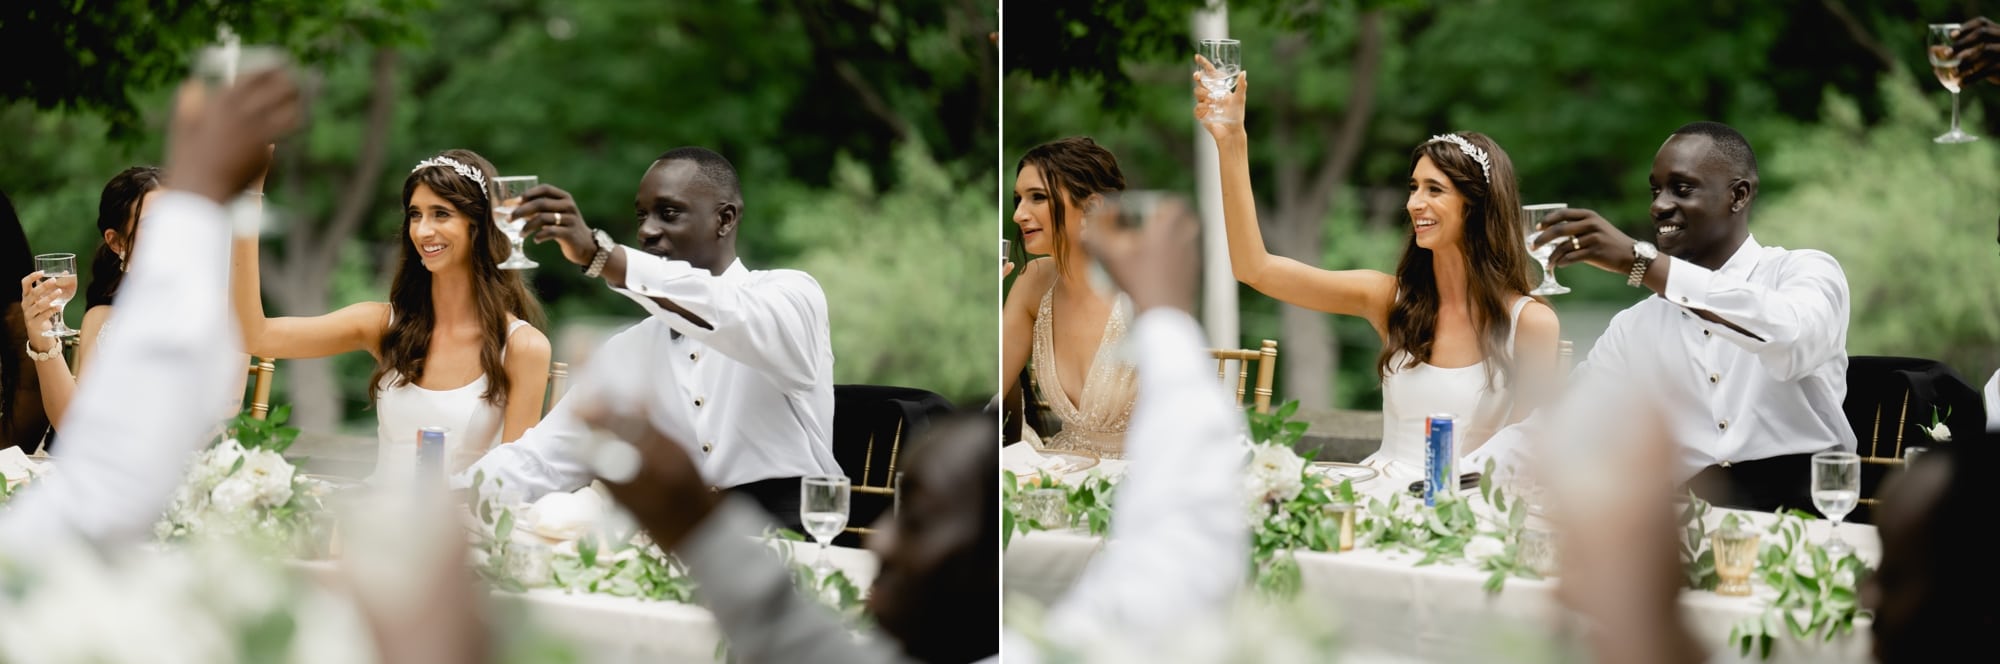 Raising a glass during wedding reception speech